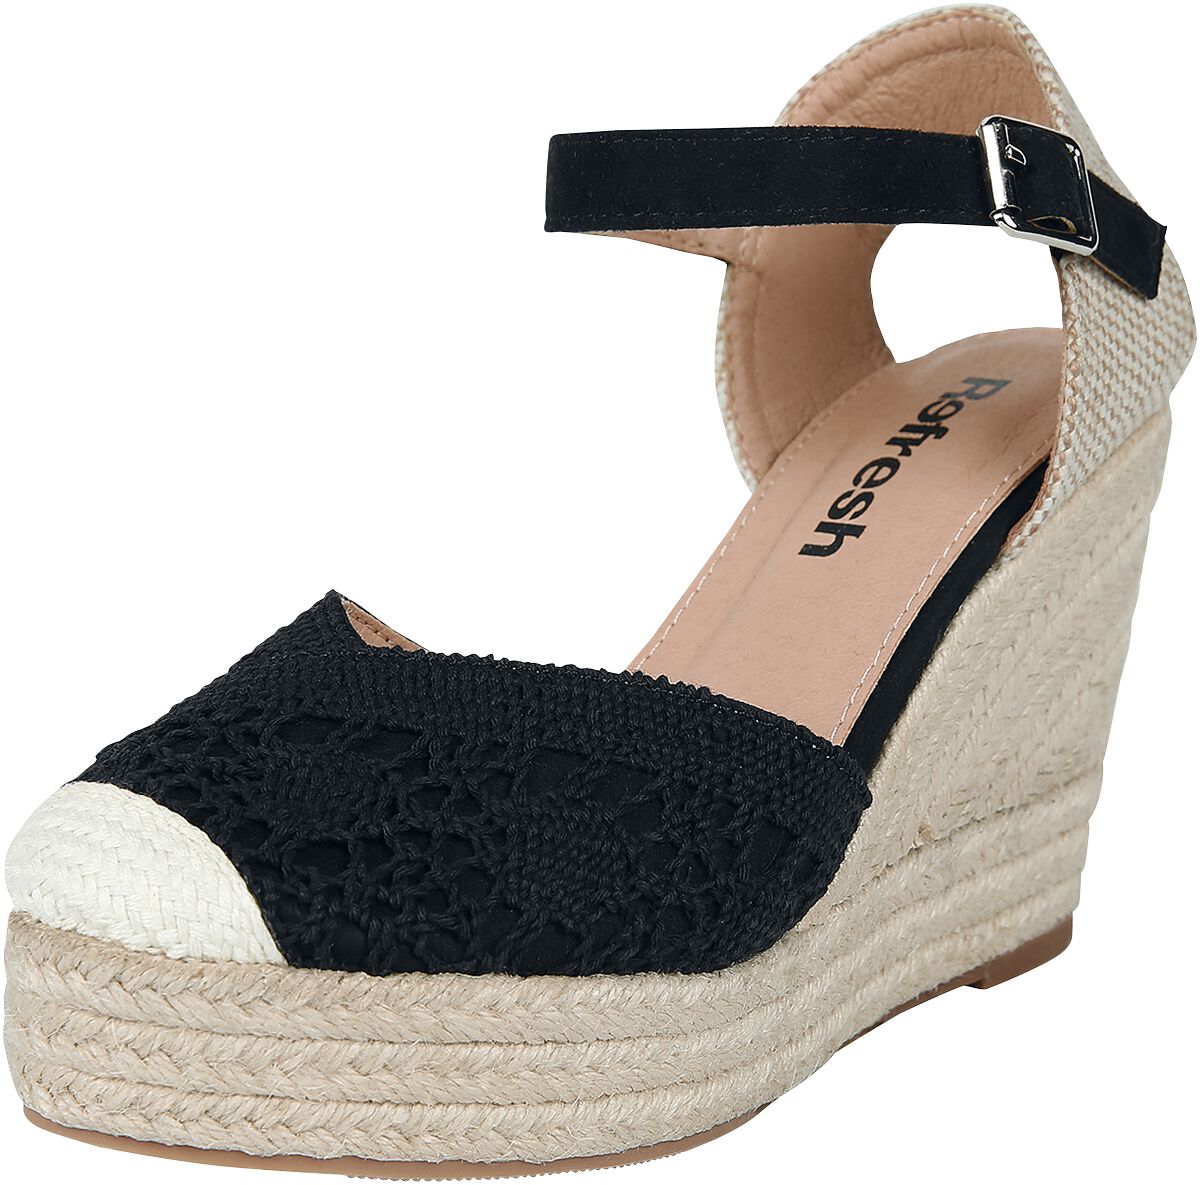 Refresh - Rockabilly High Heel - High Heel Sandale - EU37 bis EU39 - für Damen - Größe EU39 - schwarz